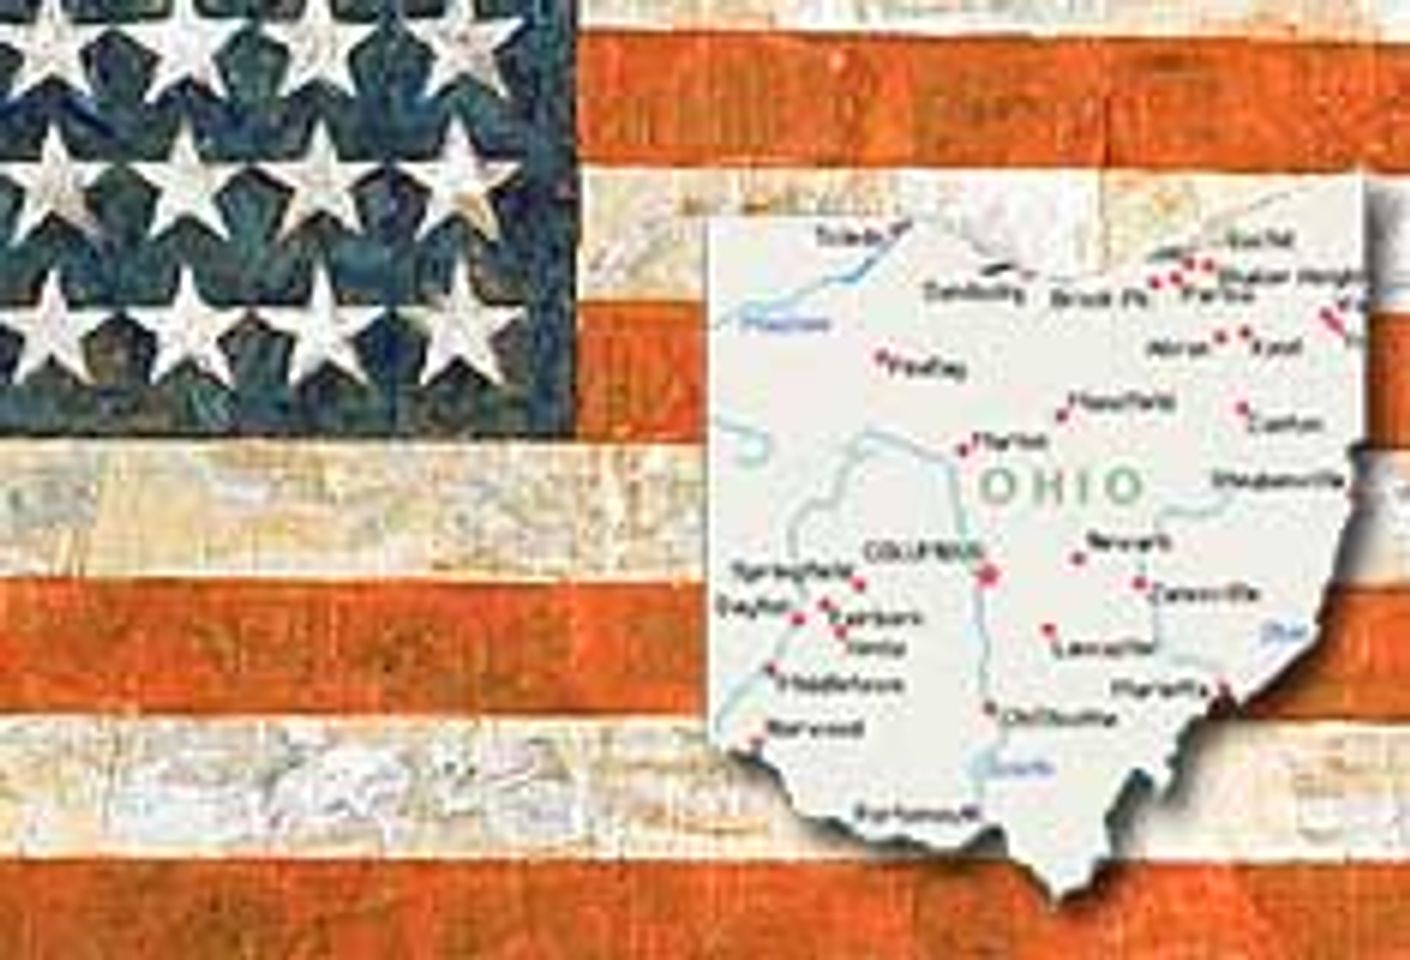 BACE Fights Ohio Strip Club Legislation